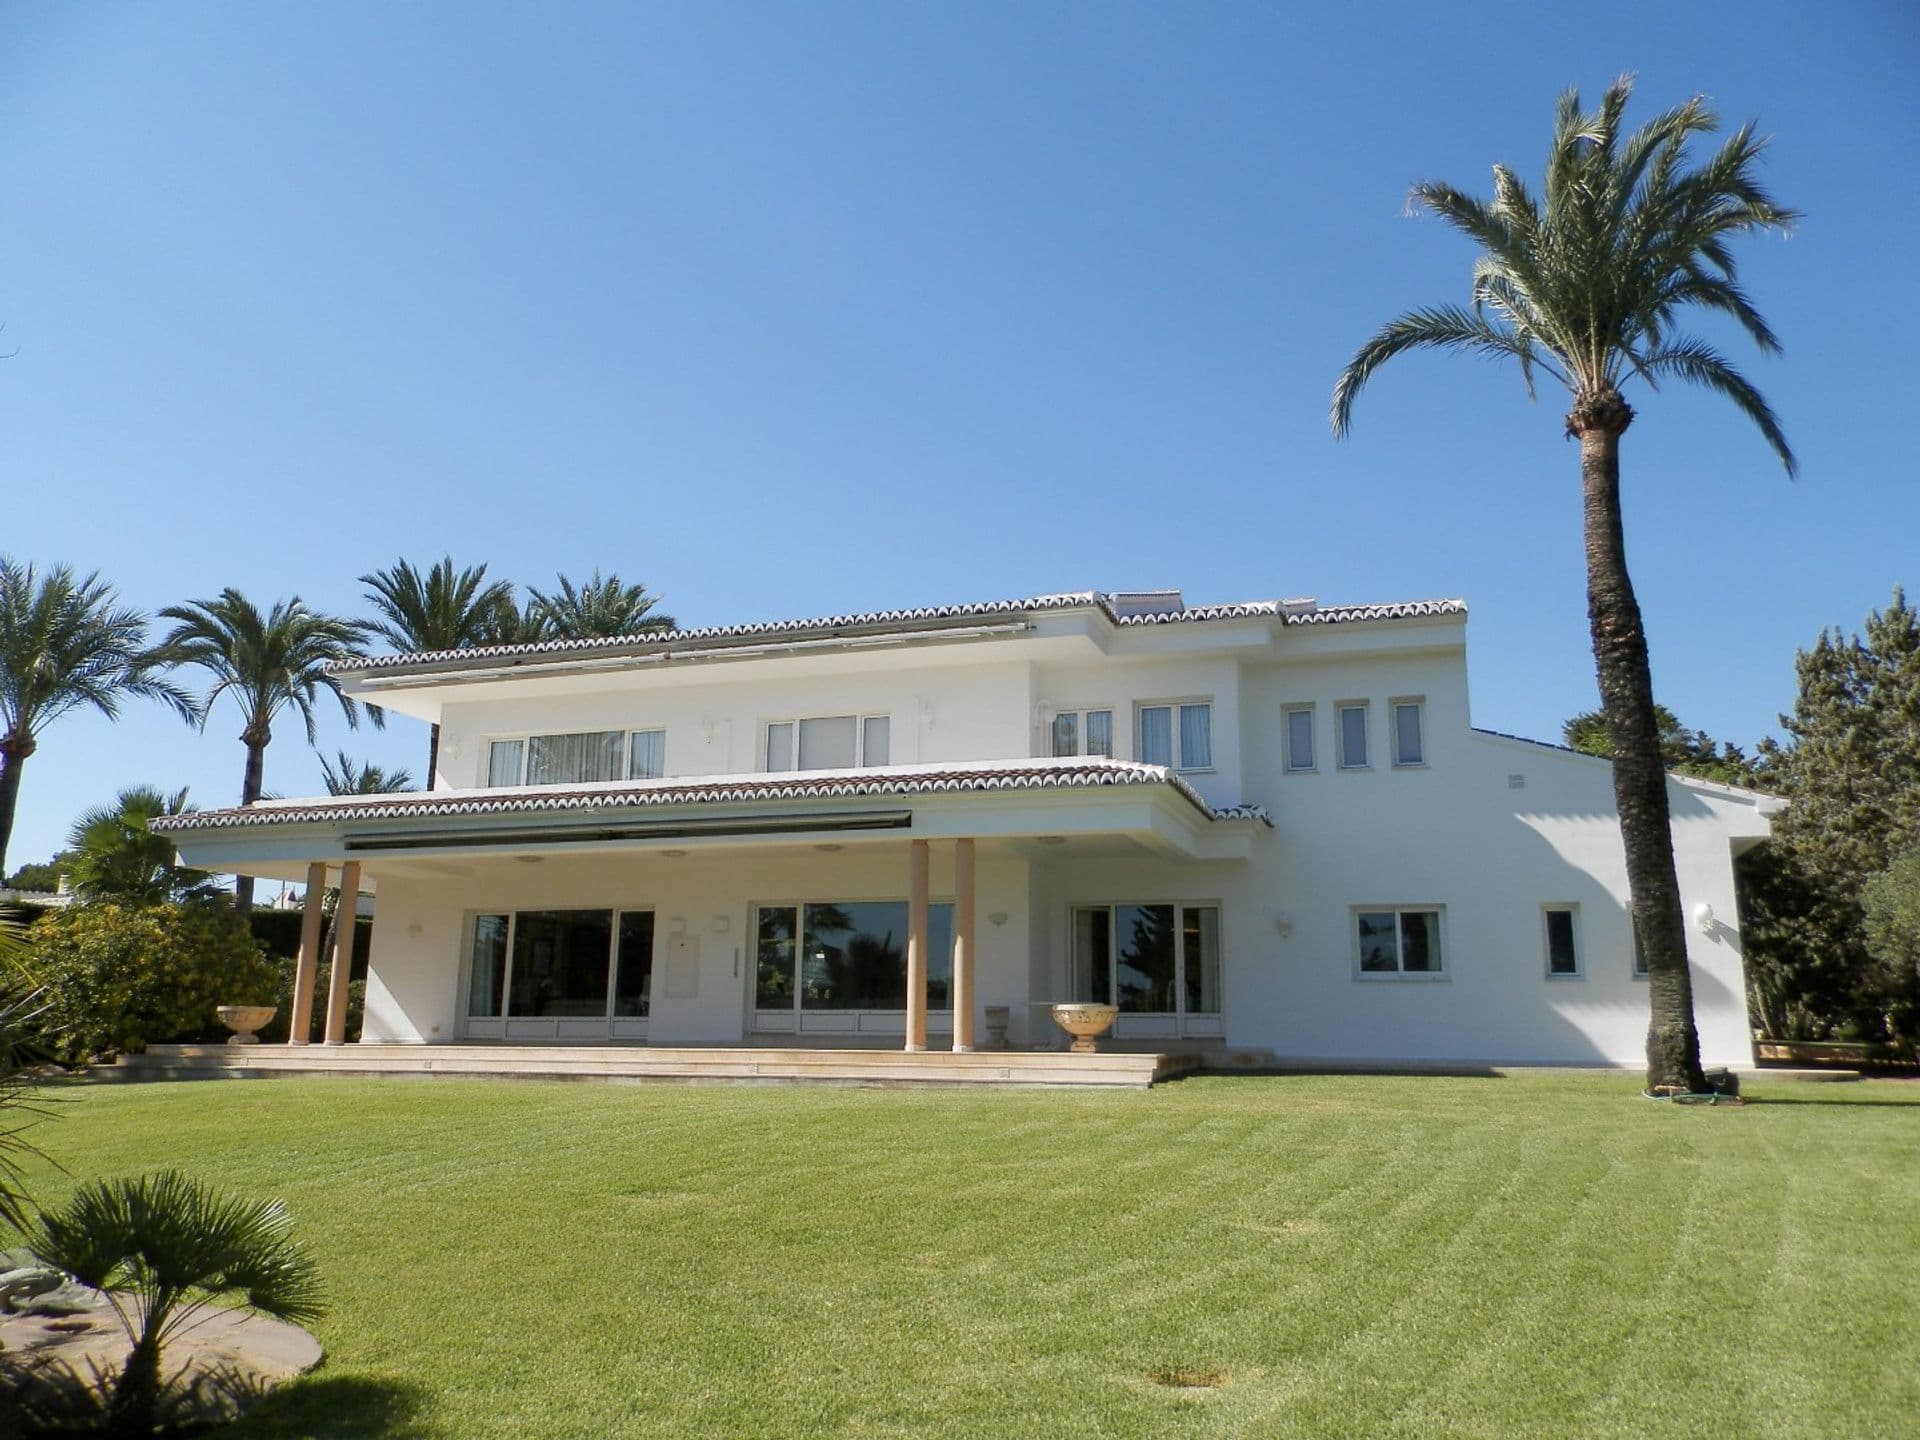 Villa exclusive au charmant design intérieur, dans la zone de Cap Martí, Jávea, Espagne.